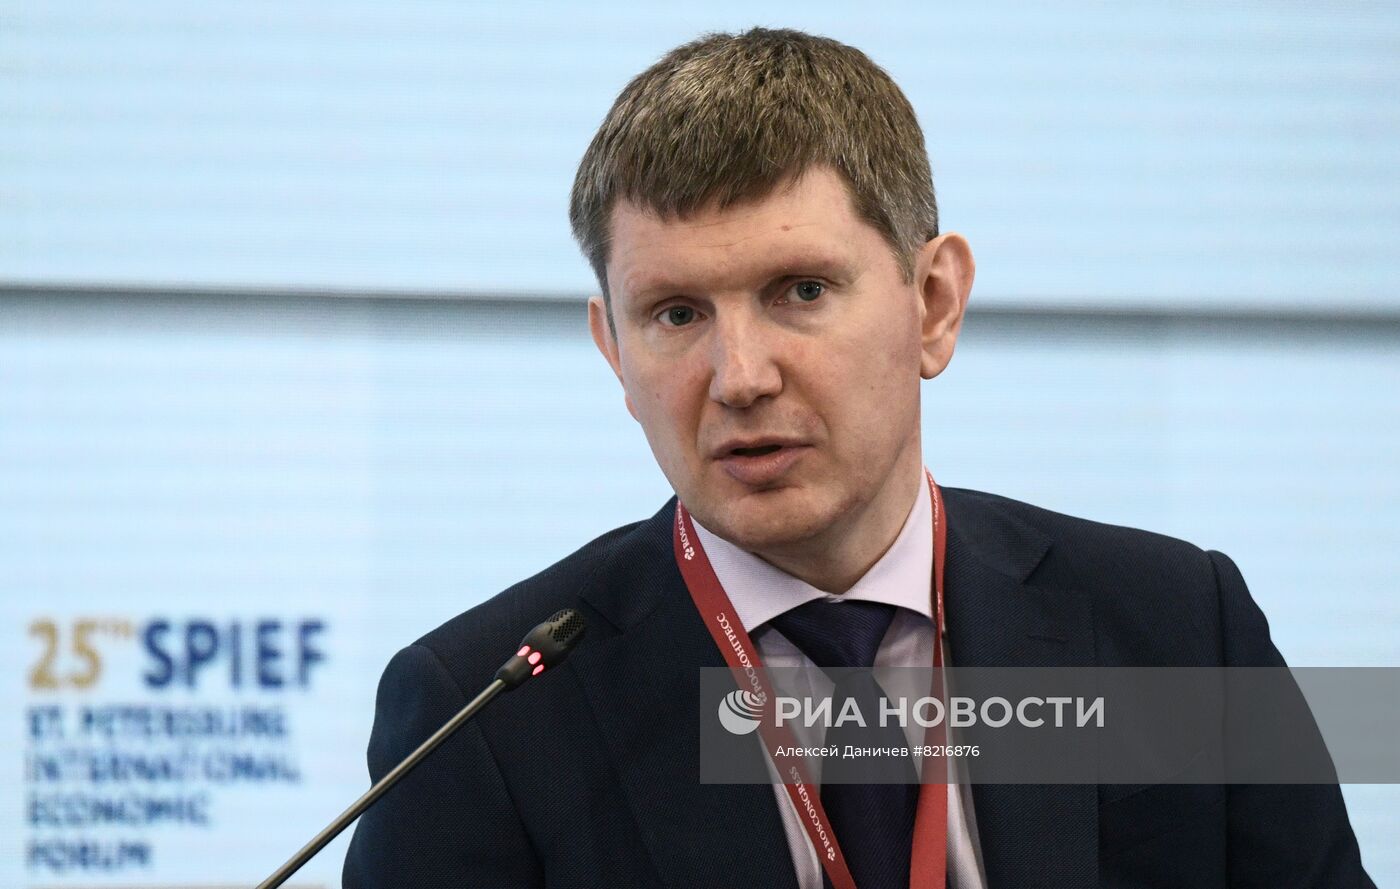 ПМЭФ-2022. Сессия. Российская экономика: современные вызовы и точки опоры